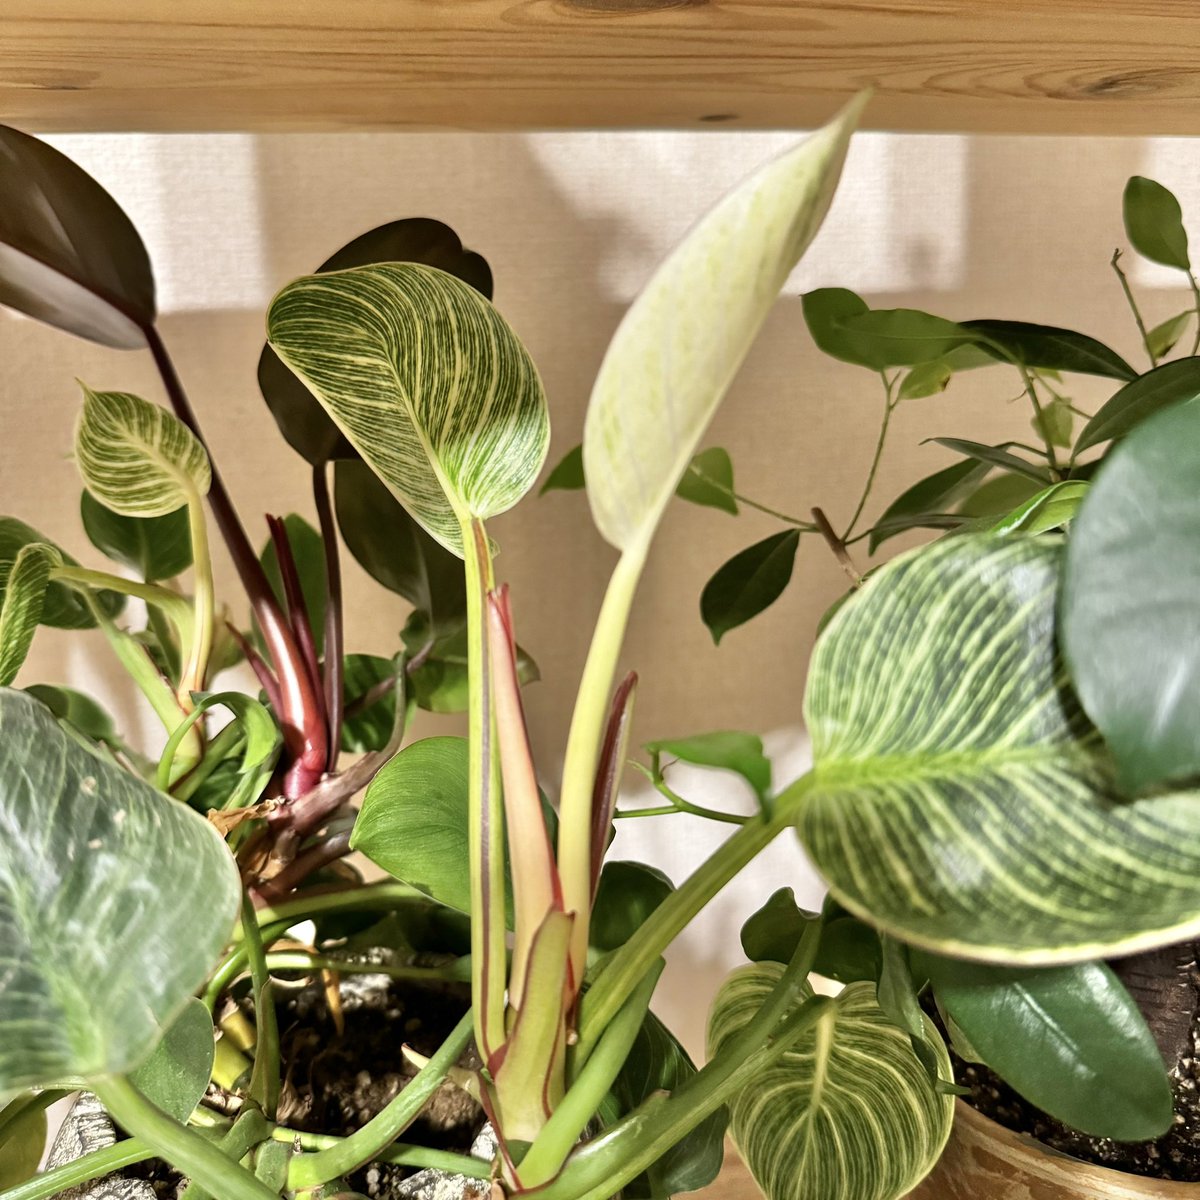 フィロデンドロンバーキン、新芽がどんどん増えてます。

#観葉植物 #フィロデンドロン #フィロデンドロンバーキン #philodendron #philodendronbirkin #birkin #foliageplant #houseplants #greenplants #indoorplants #観葉植物のある暮らし #グリーンのある暮らし #緑のある暮らし